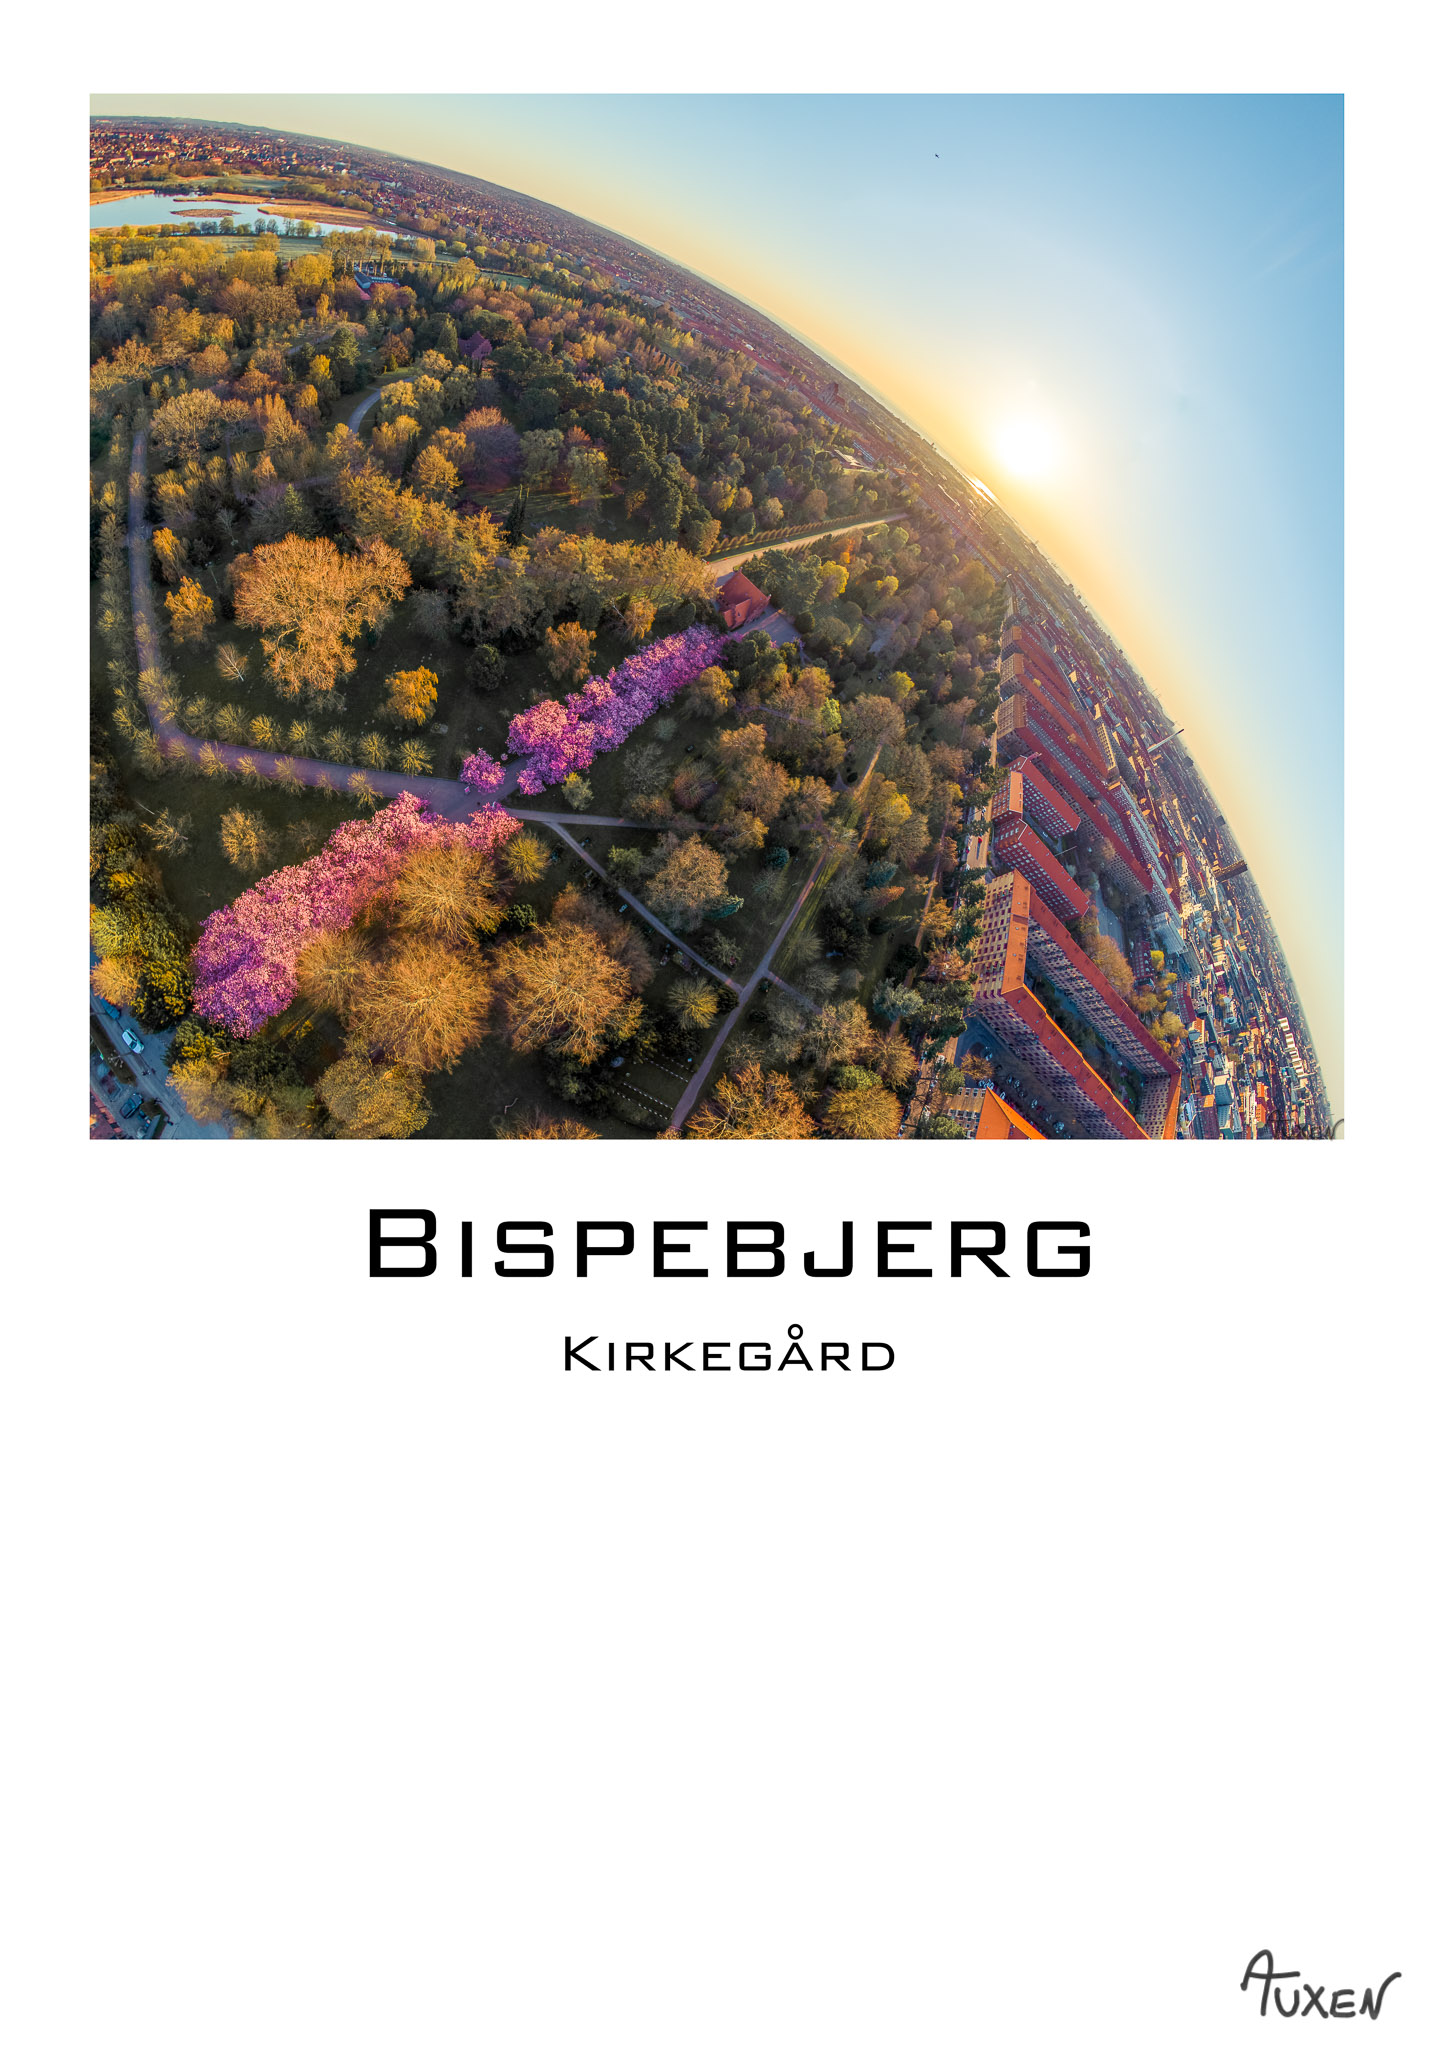 København-Bispebjerg-2